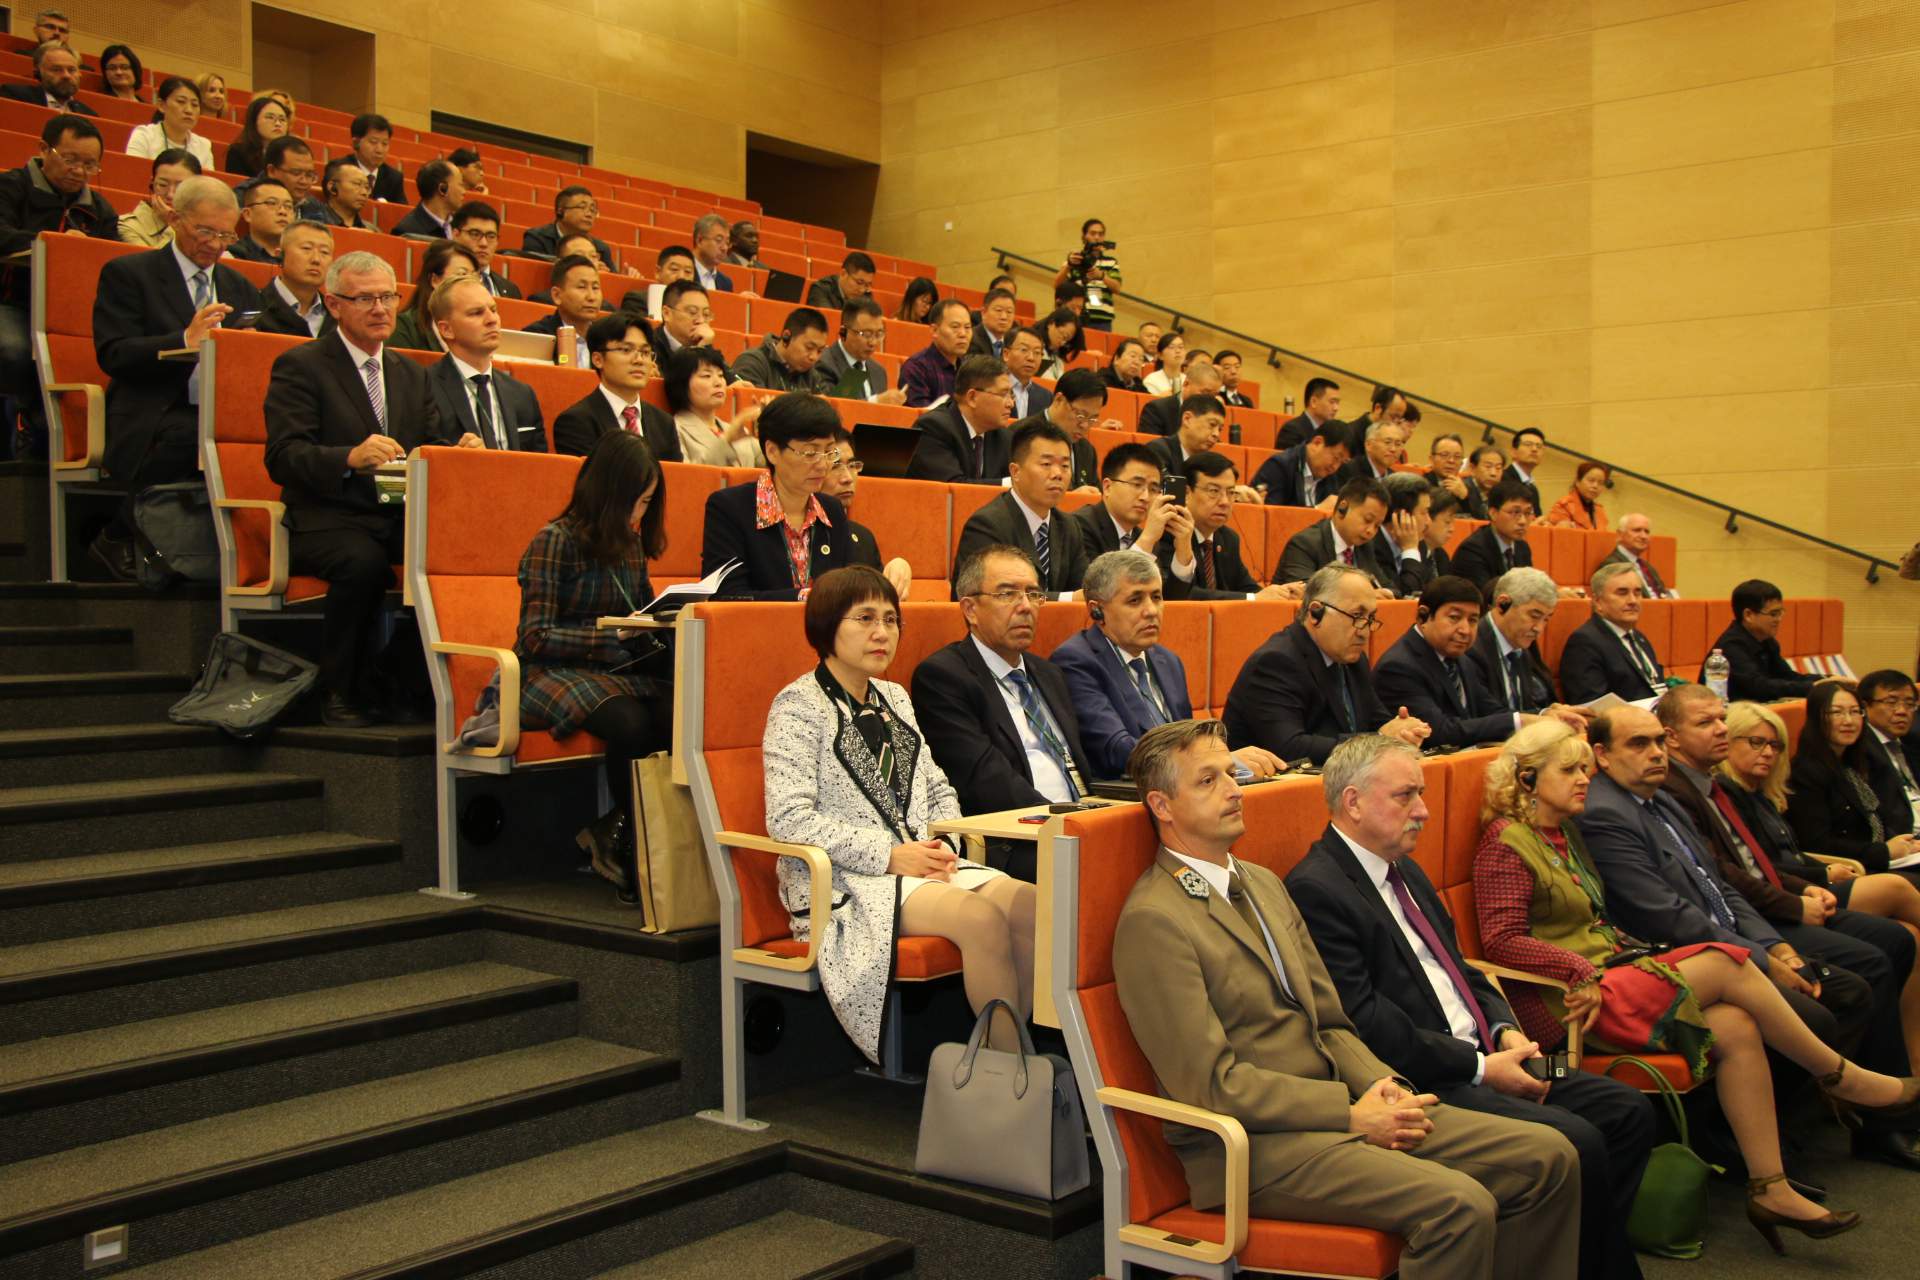 Na Uniwersytecie Przyrodniczym w Poznaniu trwa międzynarodowa konferencja połączona z IV Forum w ramach SAERIA, podczas którego spotykają się naukowcy największych uczelni rolniczych z Chin oraz wielu innych krajów położonych wzdłuż Jedwabnego szlaku.